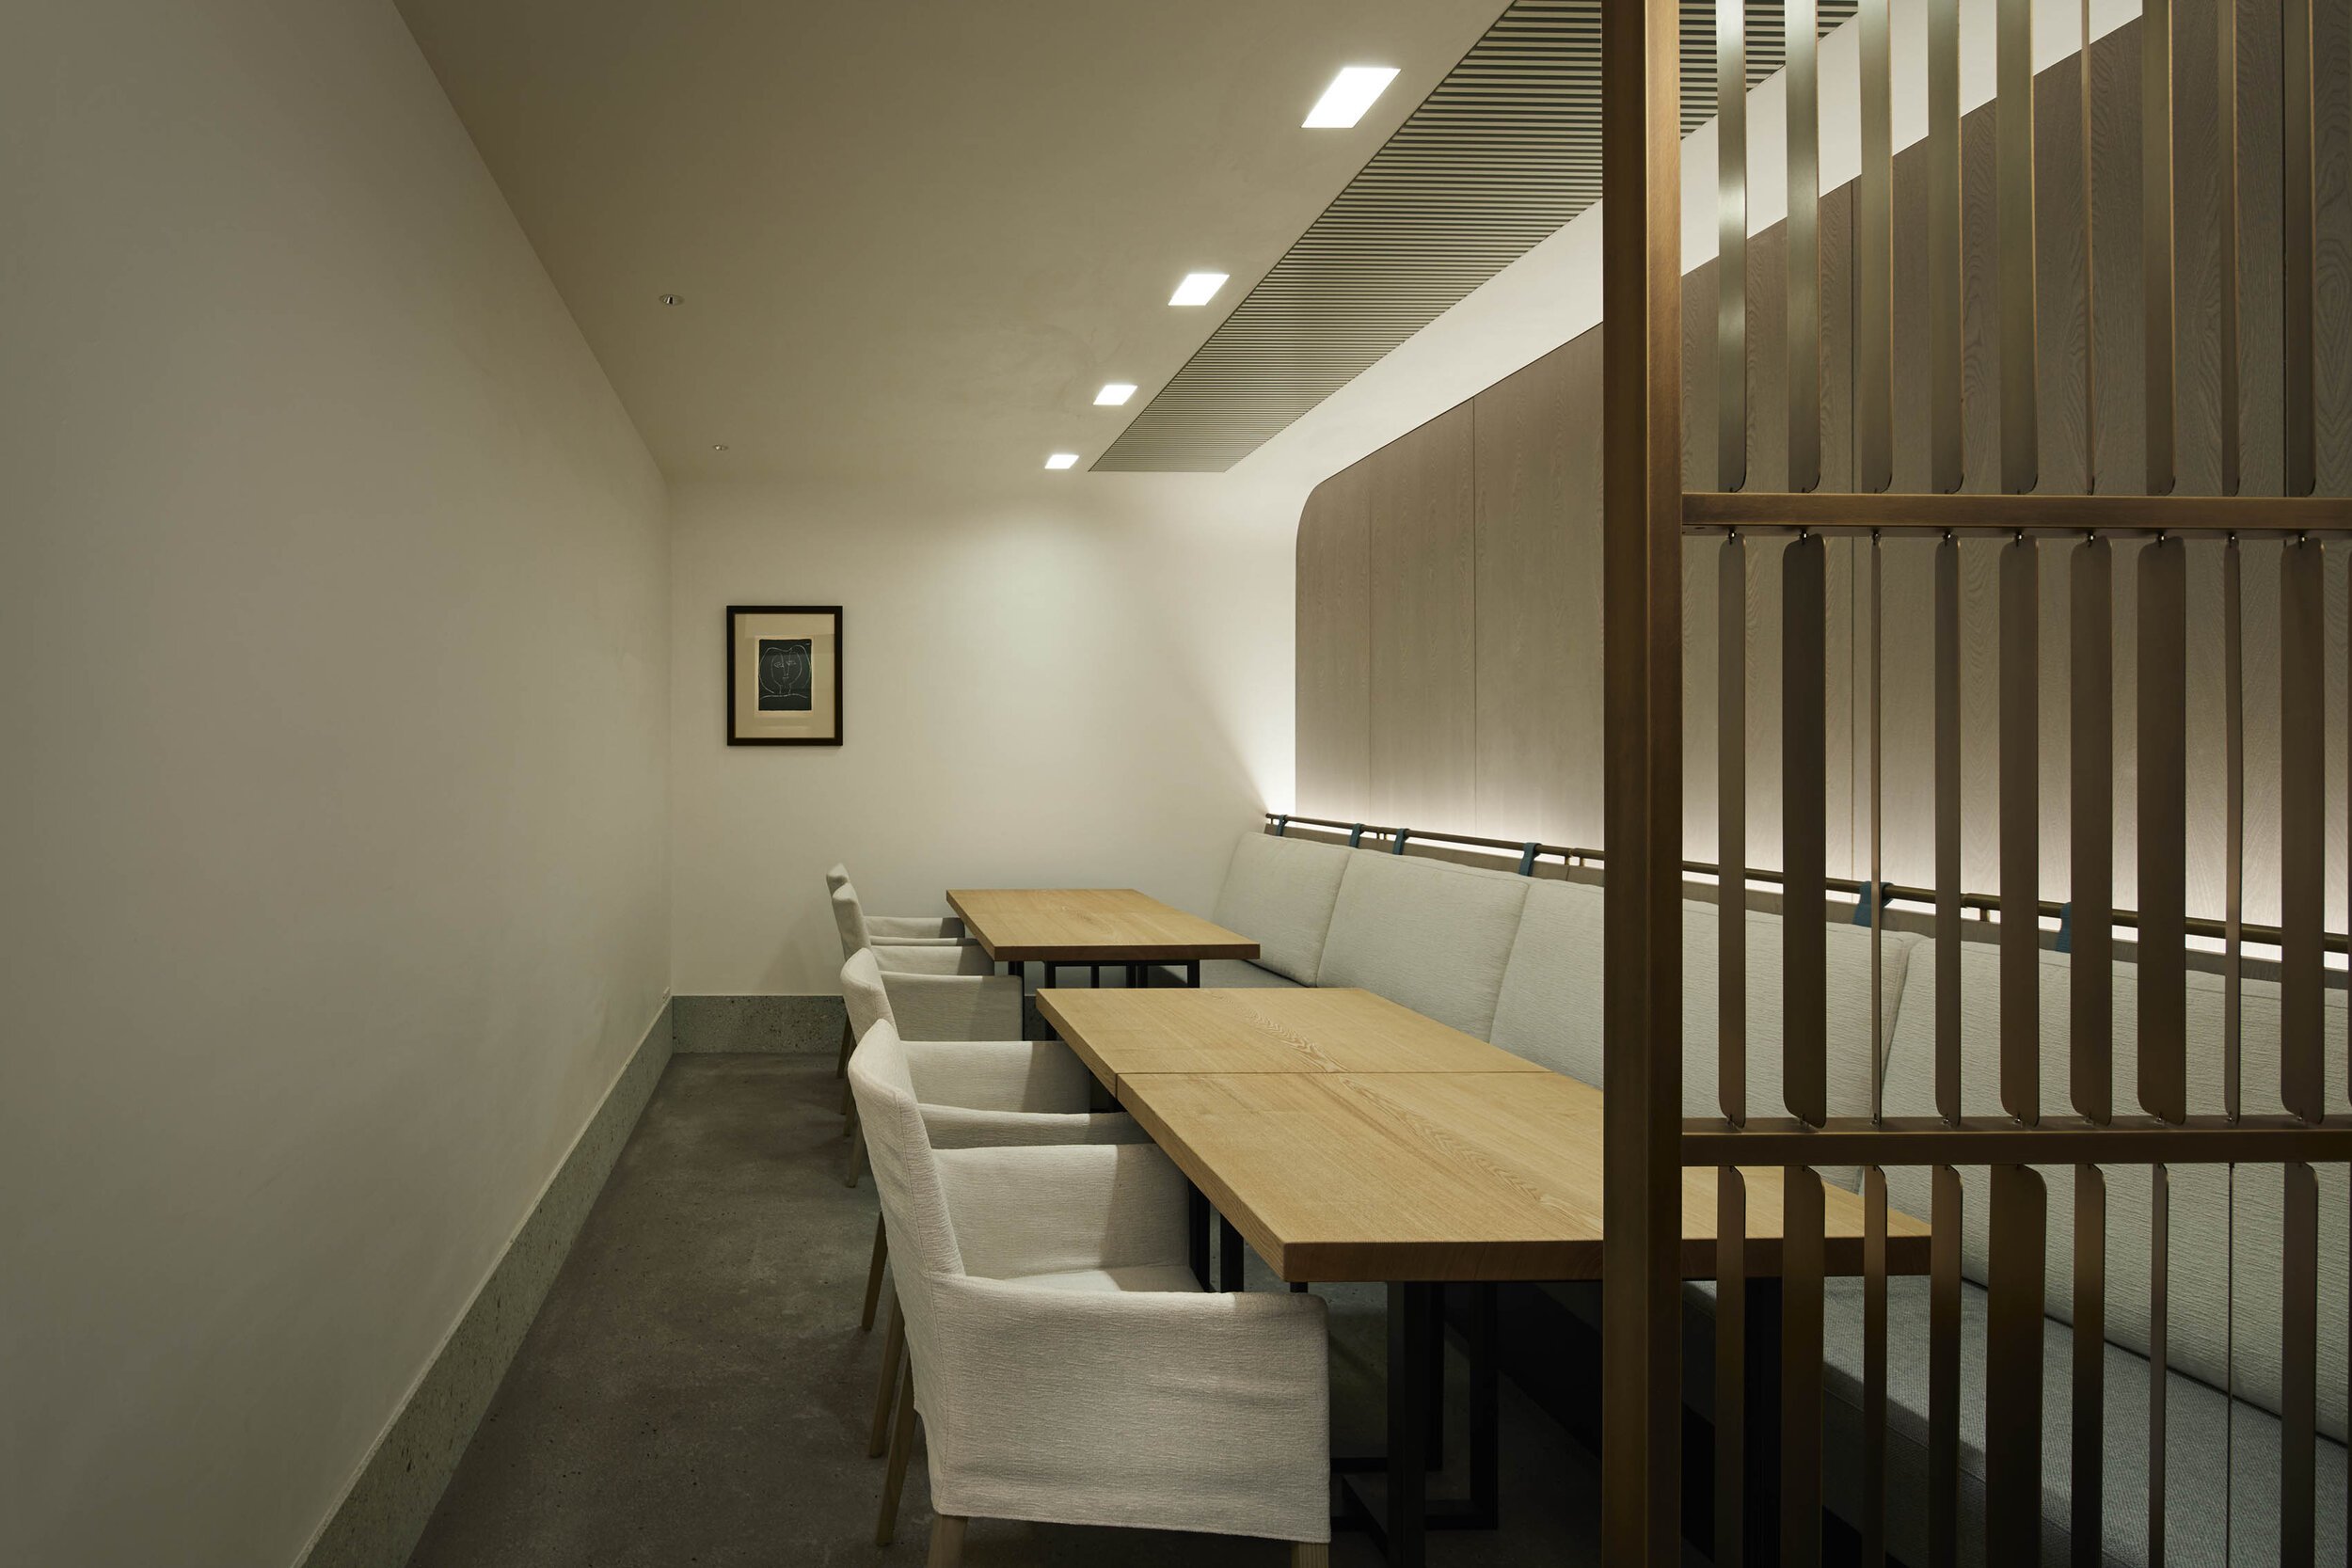  プラスタックplastacの奥昌子がインテリアデザインを手掛けた日本料理レストラン「GINZA 豉 KUKI」のテーブル席。 